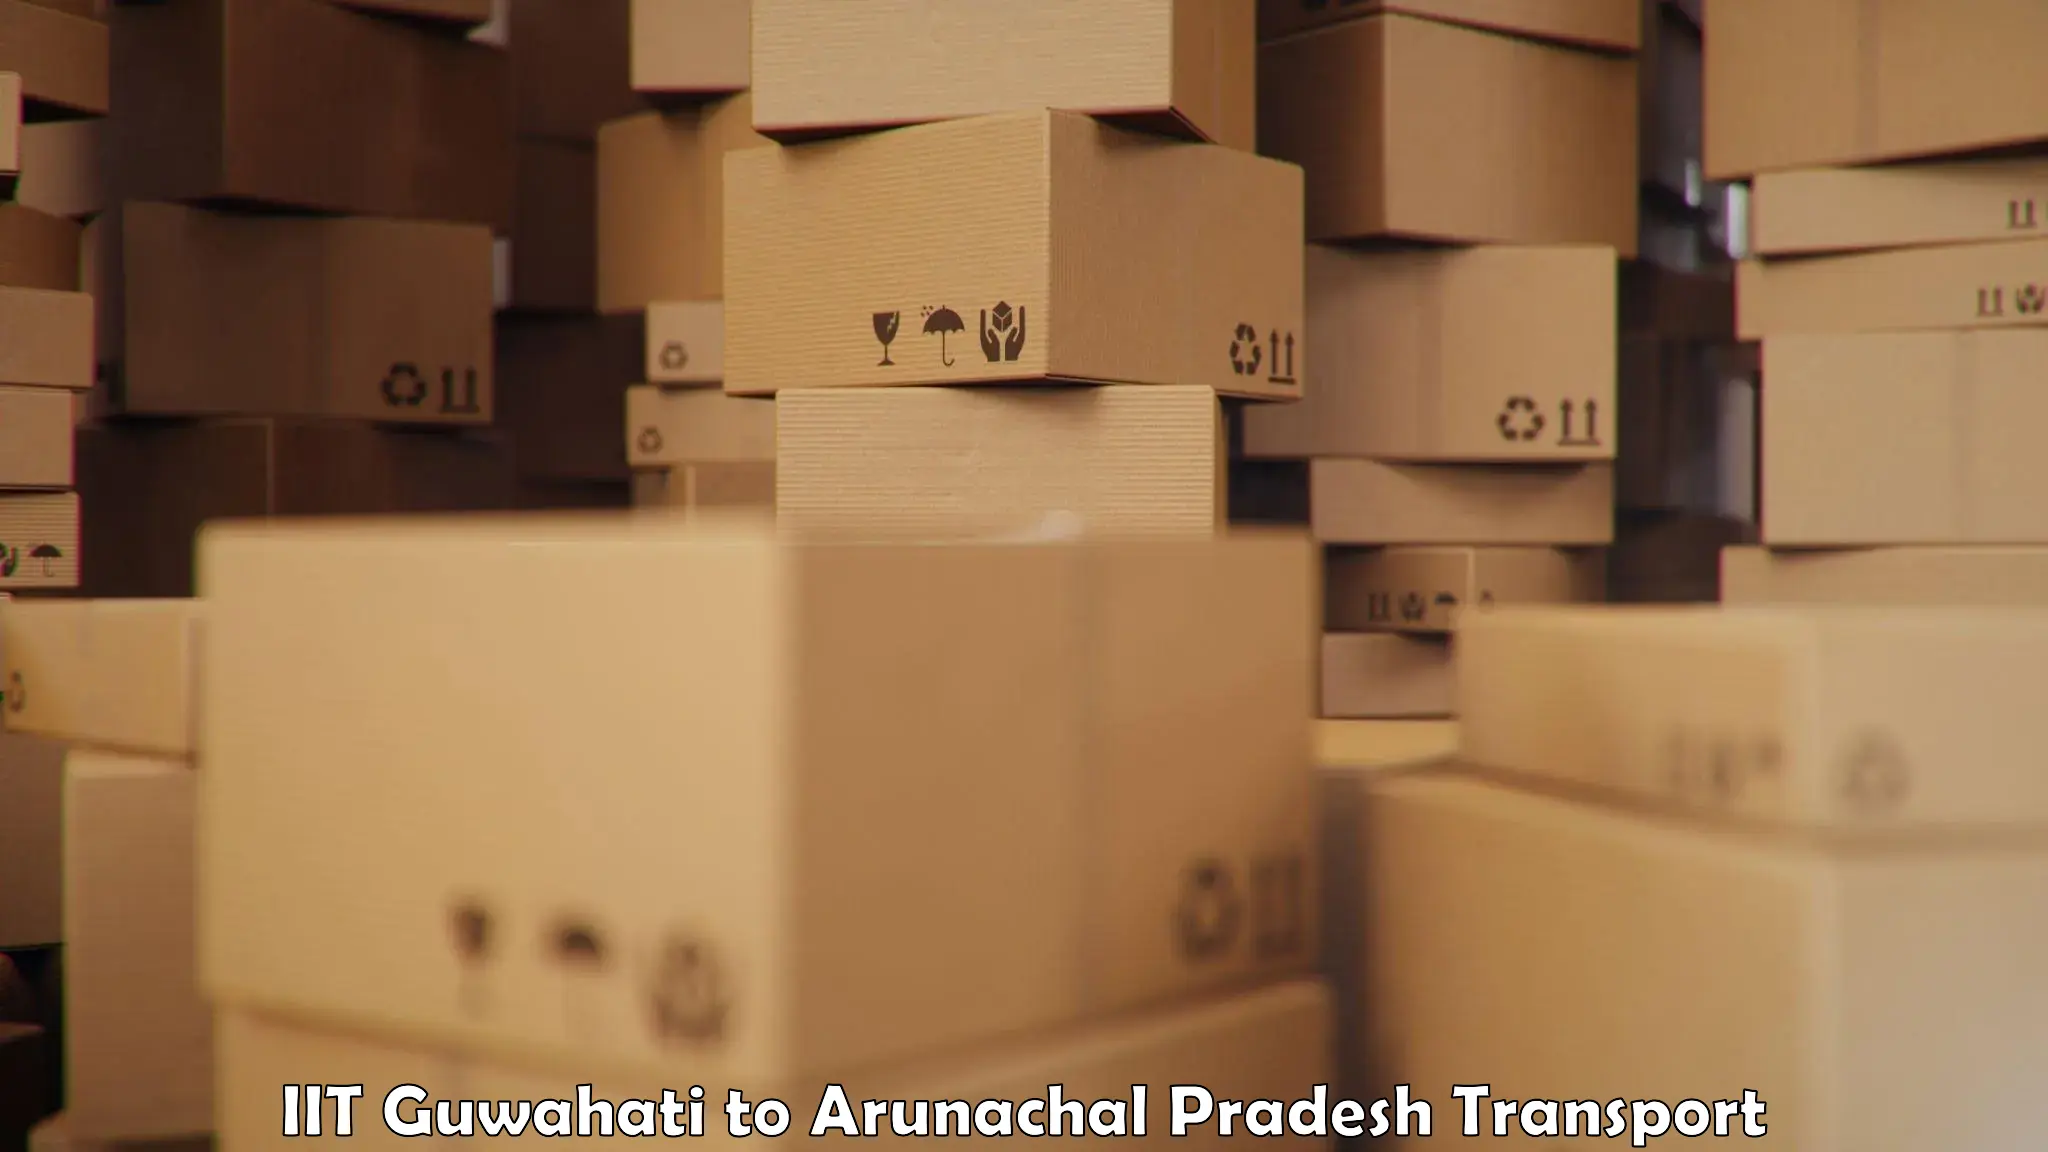 Vehicle courier services IIT Guwahati to Arunachal Pradesh